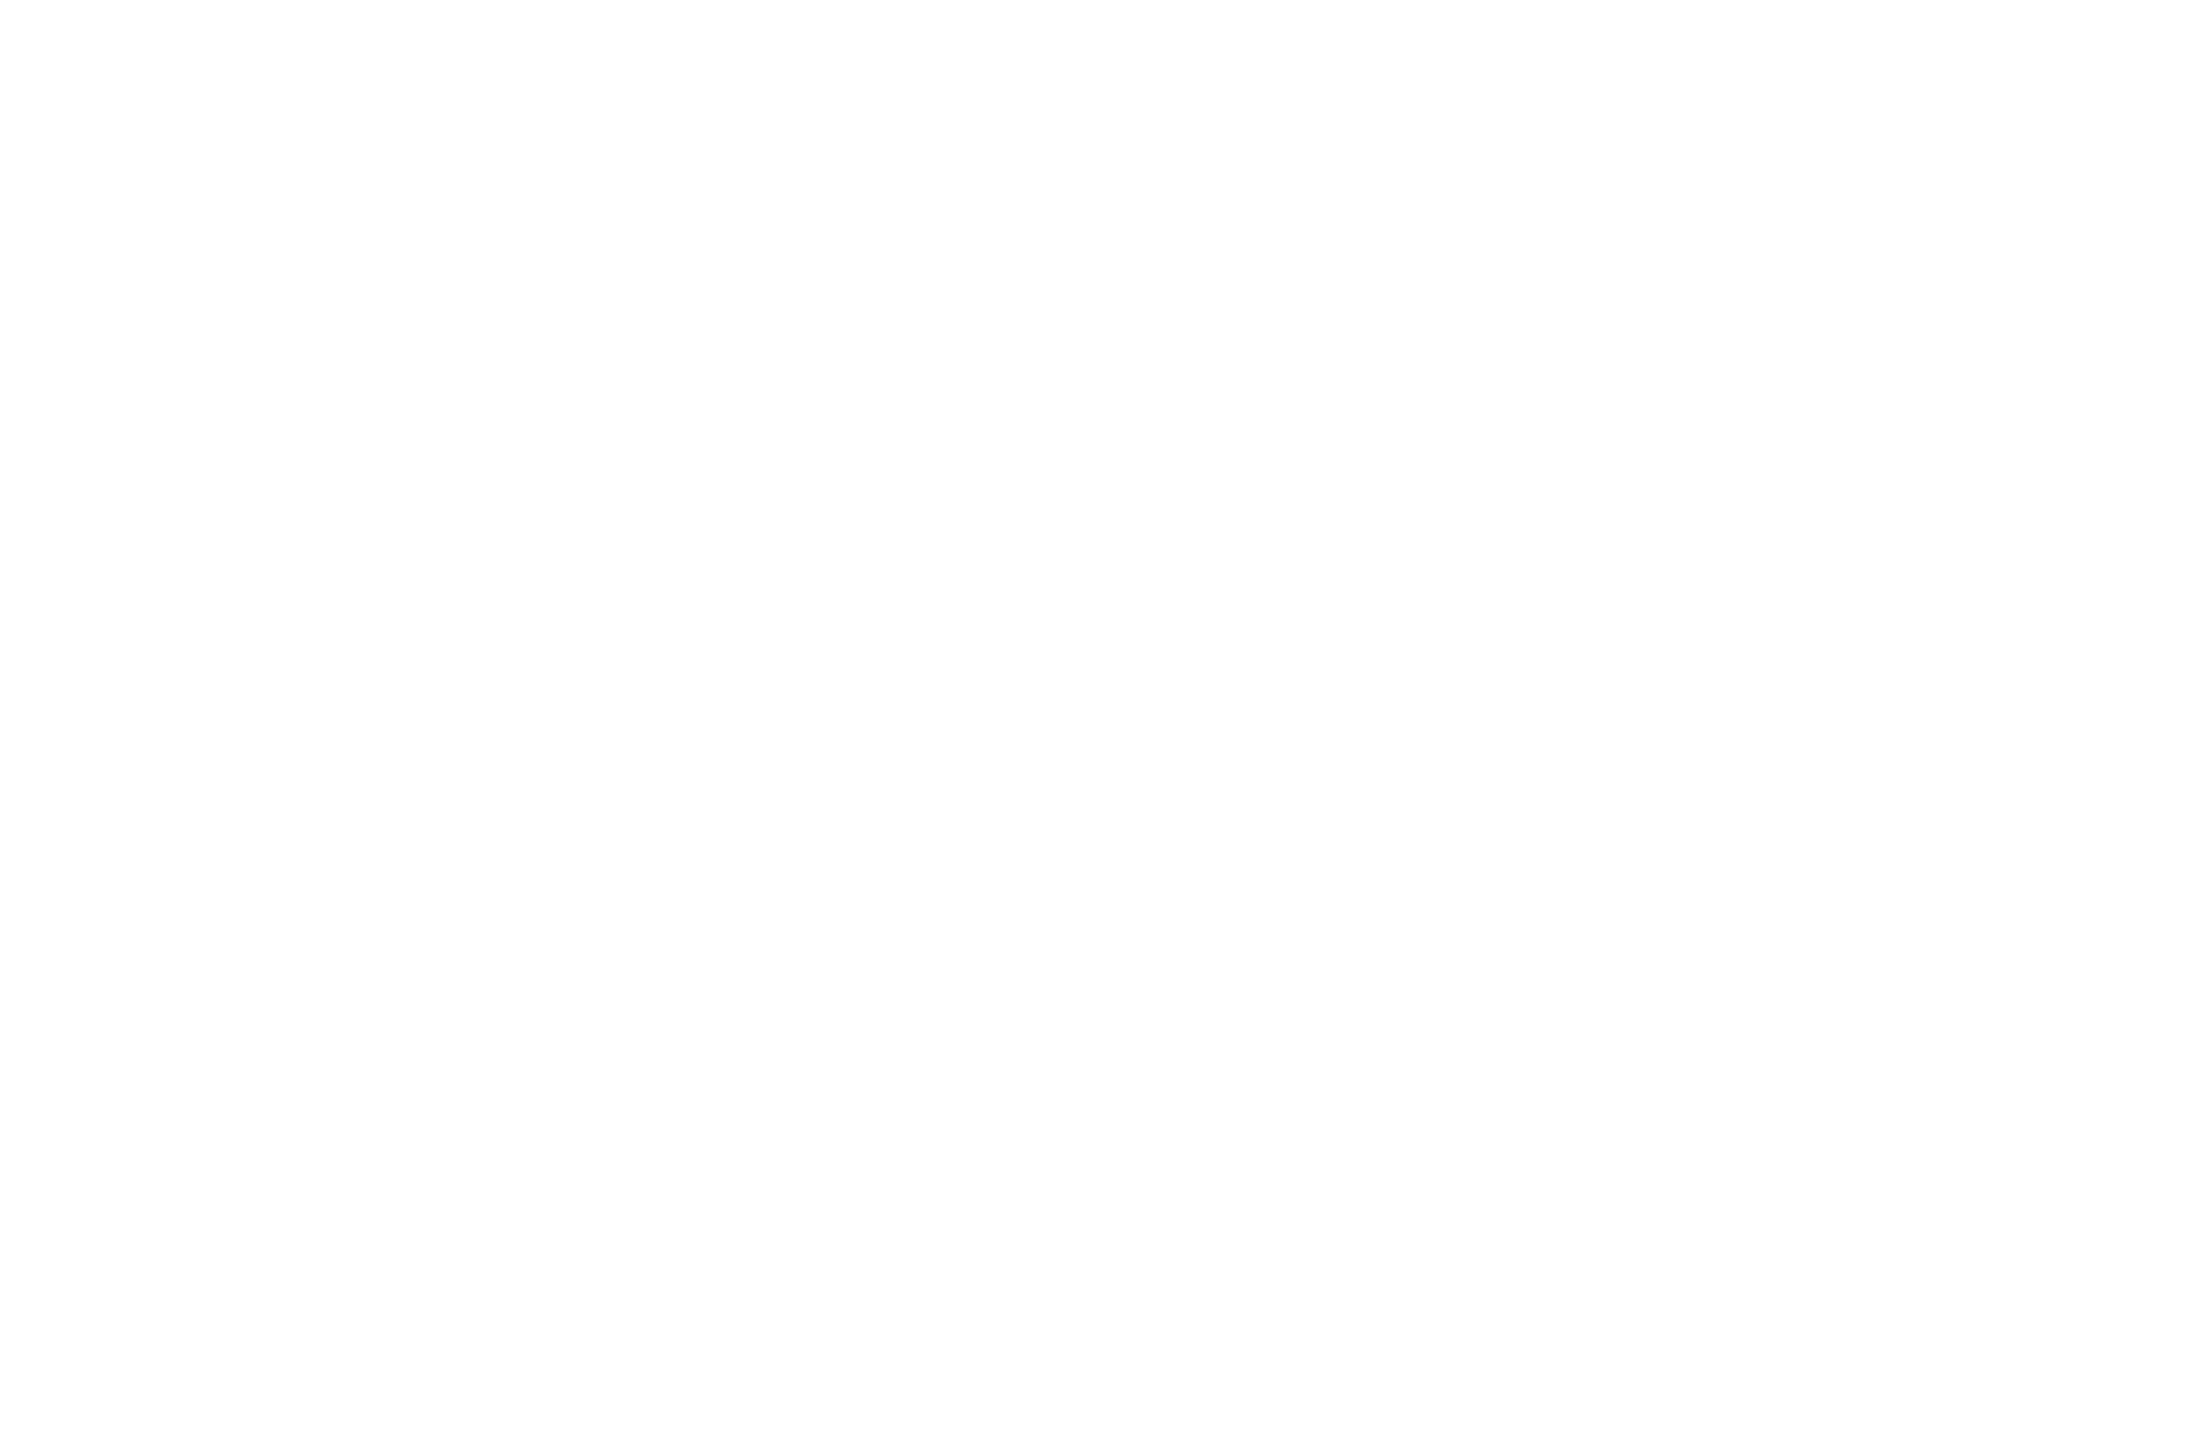 Beef Meat – Euroganaderos Group